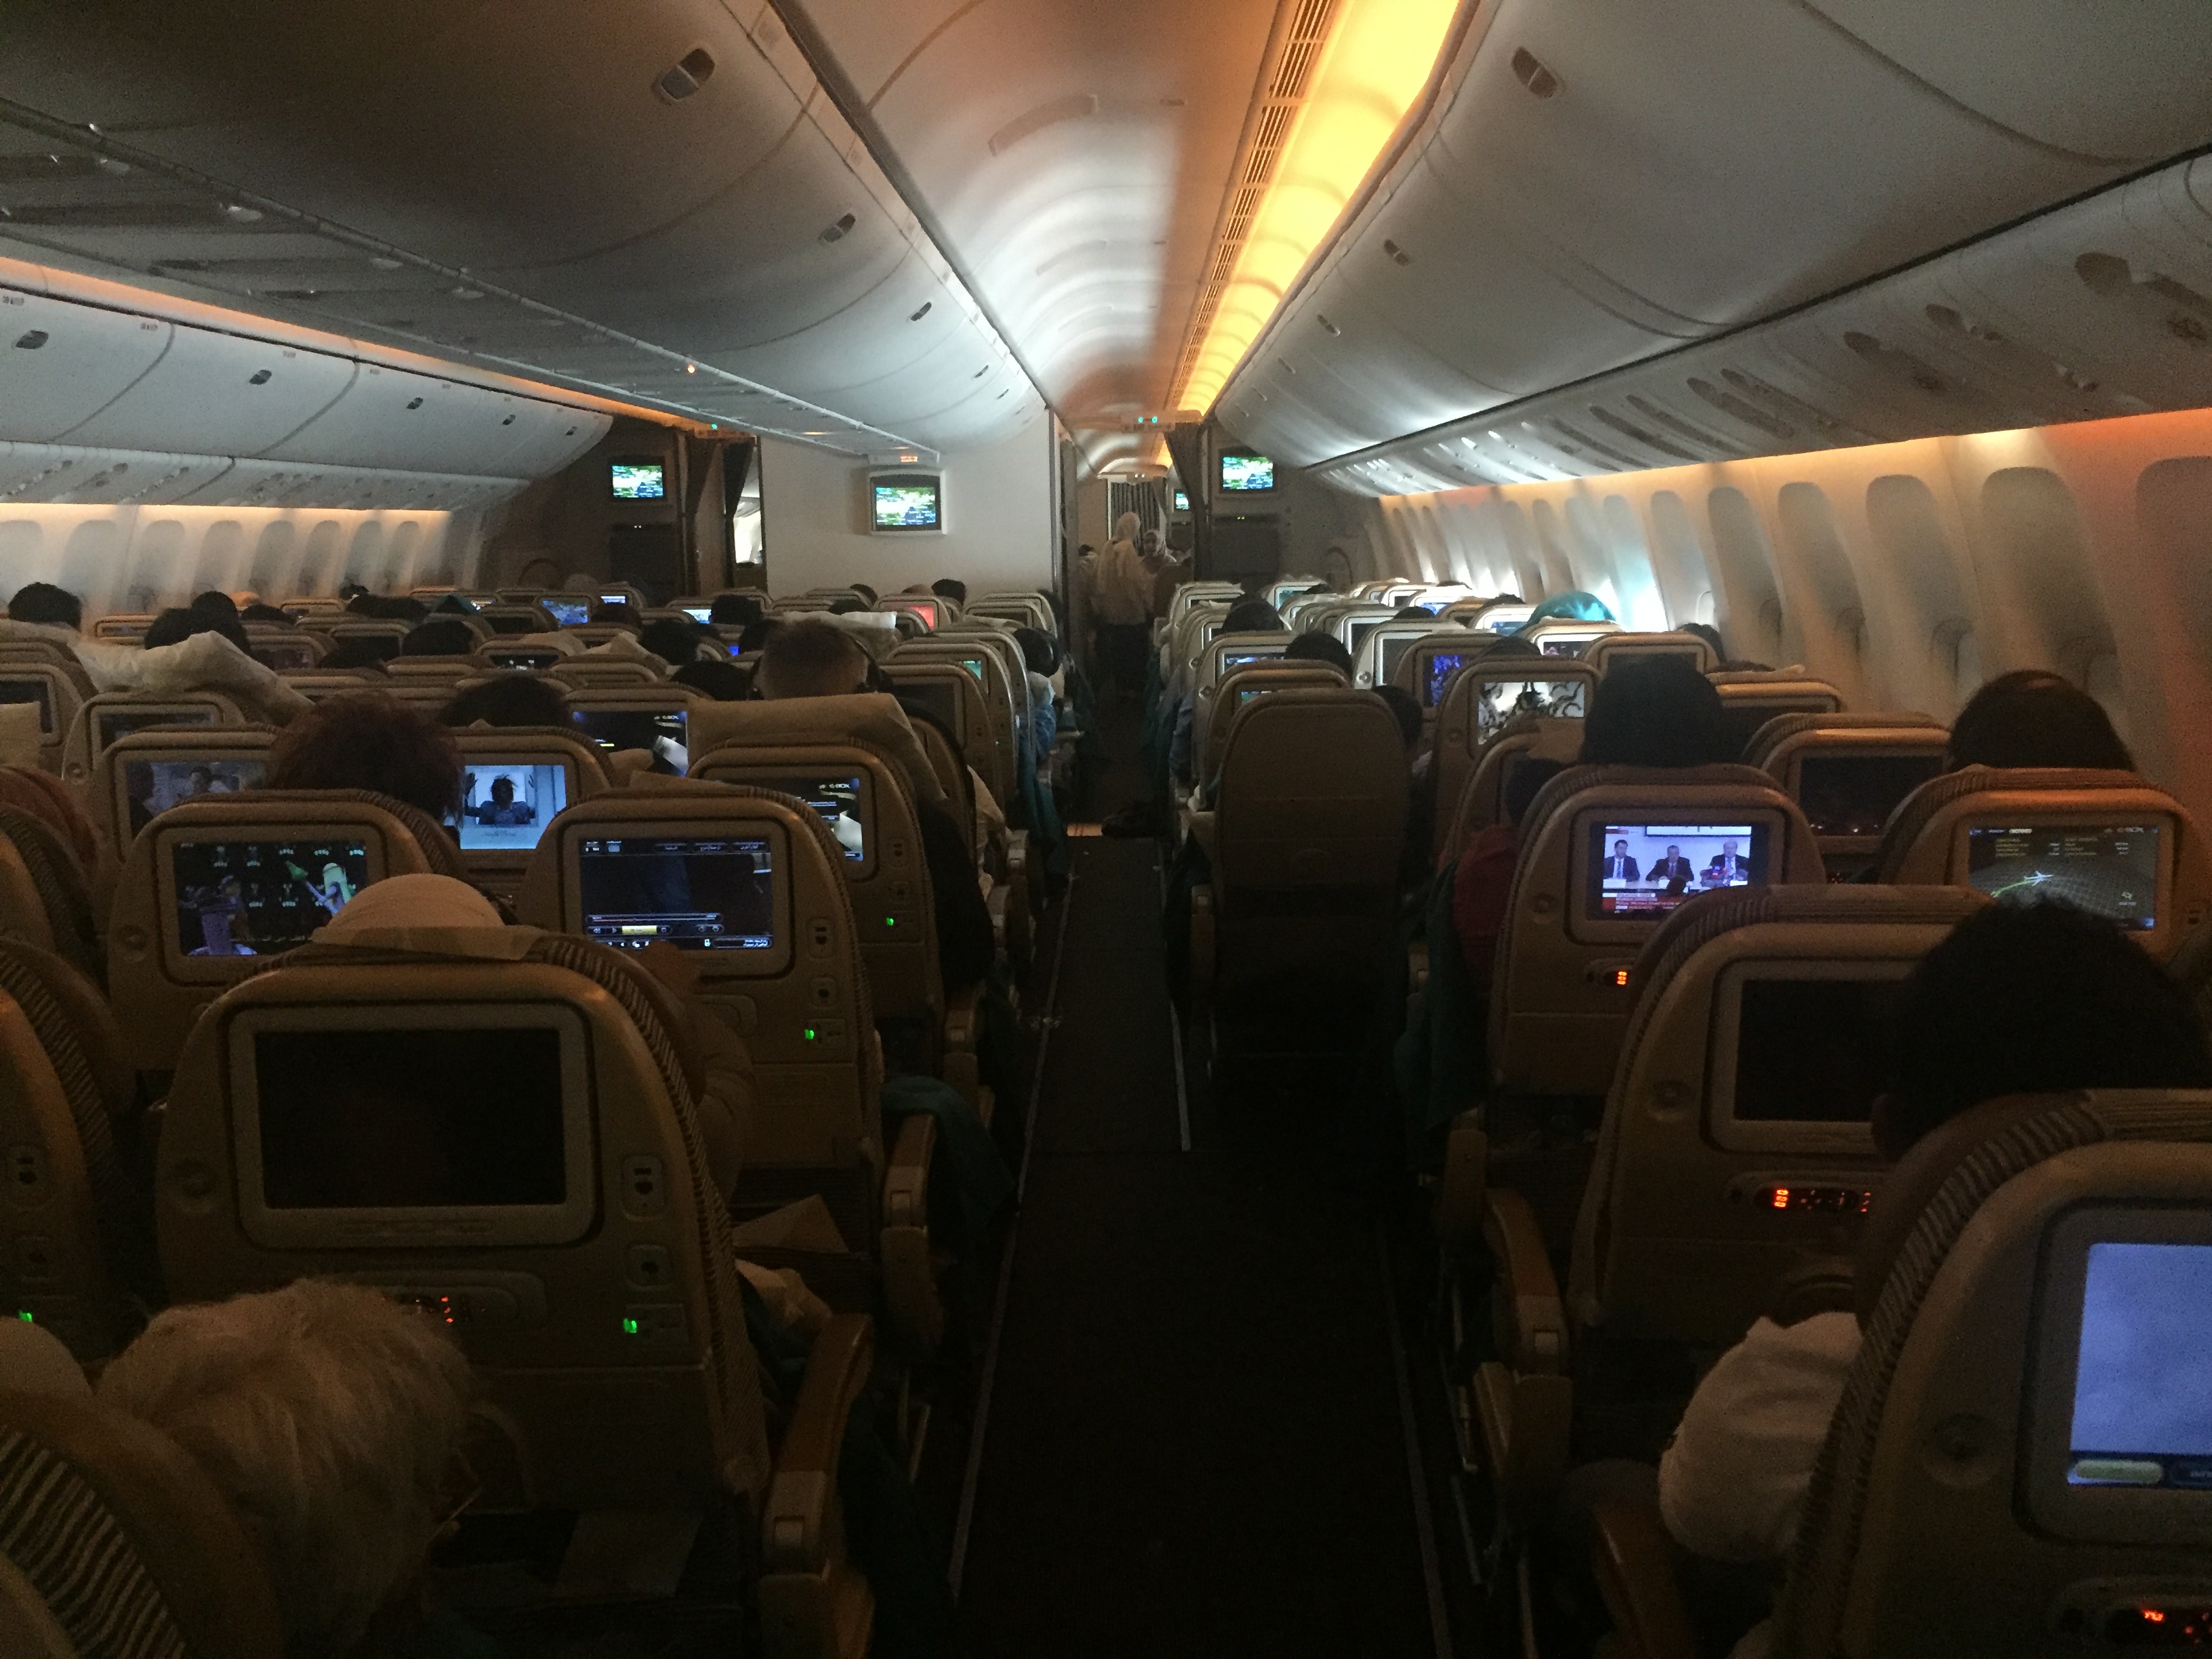 Etihad Airways Seat Maps | SeatMaestro